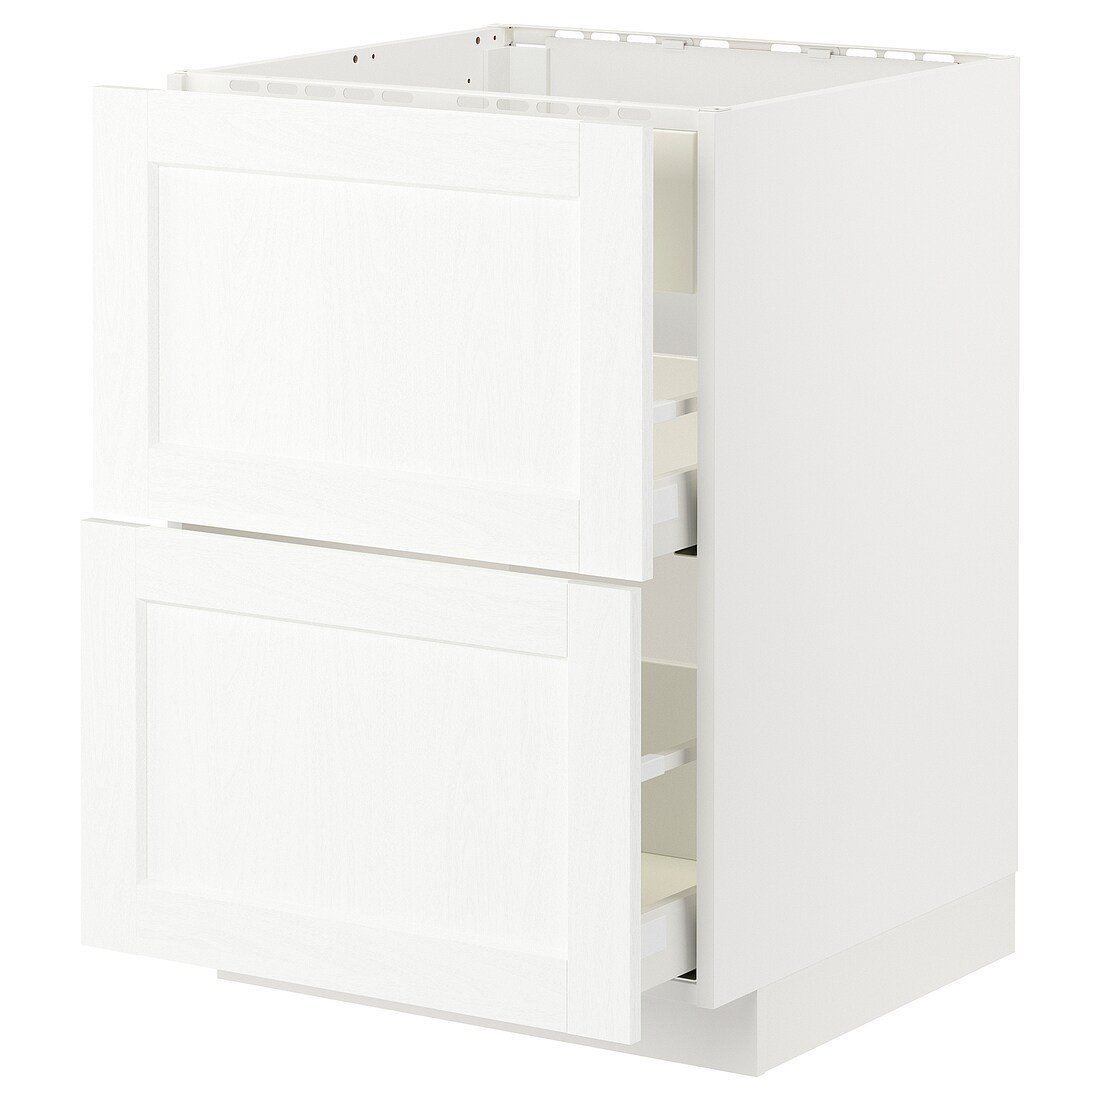 METOD МЕТОД / MAXIMERA МАКСИМЕРА Напольный шкаф для варочной панели / вытяжка с ящиком, белый Enköping / белый имитация дерева, 60x60 см